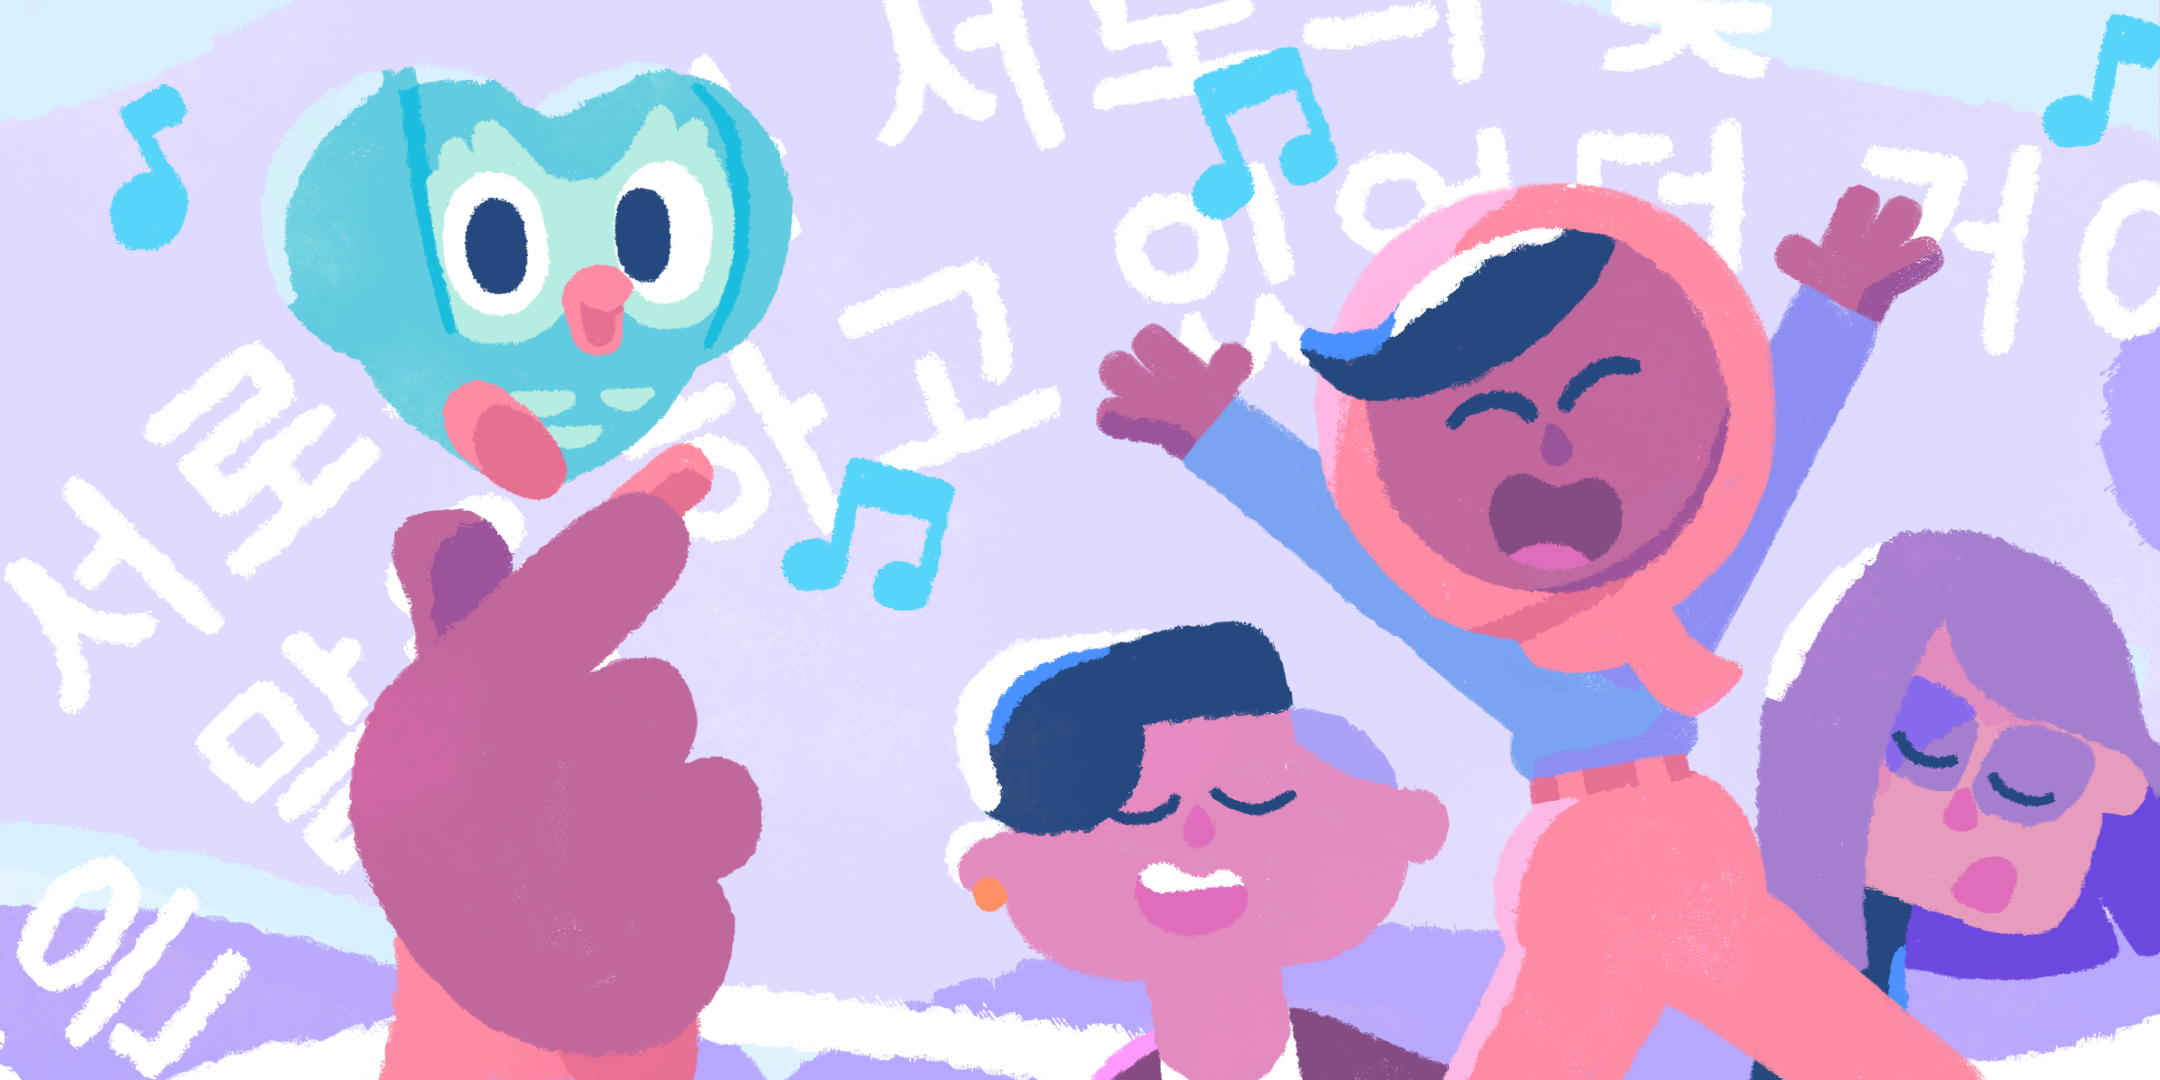 デュオリンゴのキャラクター、ザリ、リリー、リンが目を閉じて歌い、背景には韓国語の歌詞が流れている。匿名の手は親指と人差し指でハートマークを作り、その手の上にハートの形になったデュオが浮かんでいる。